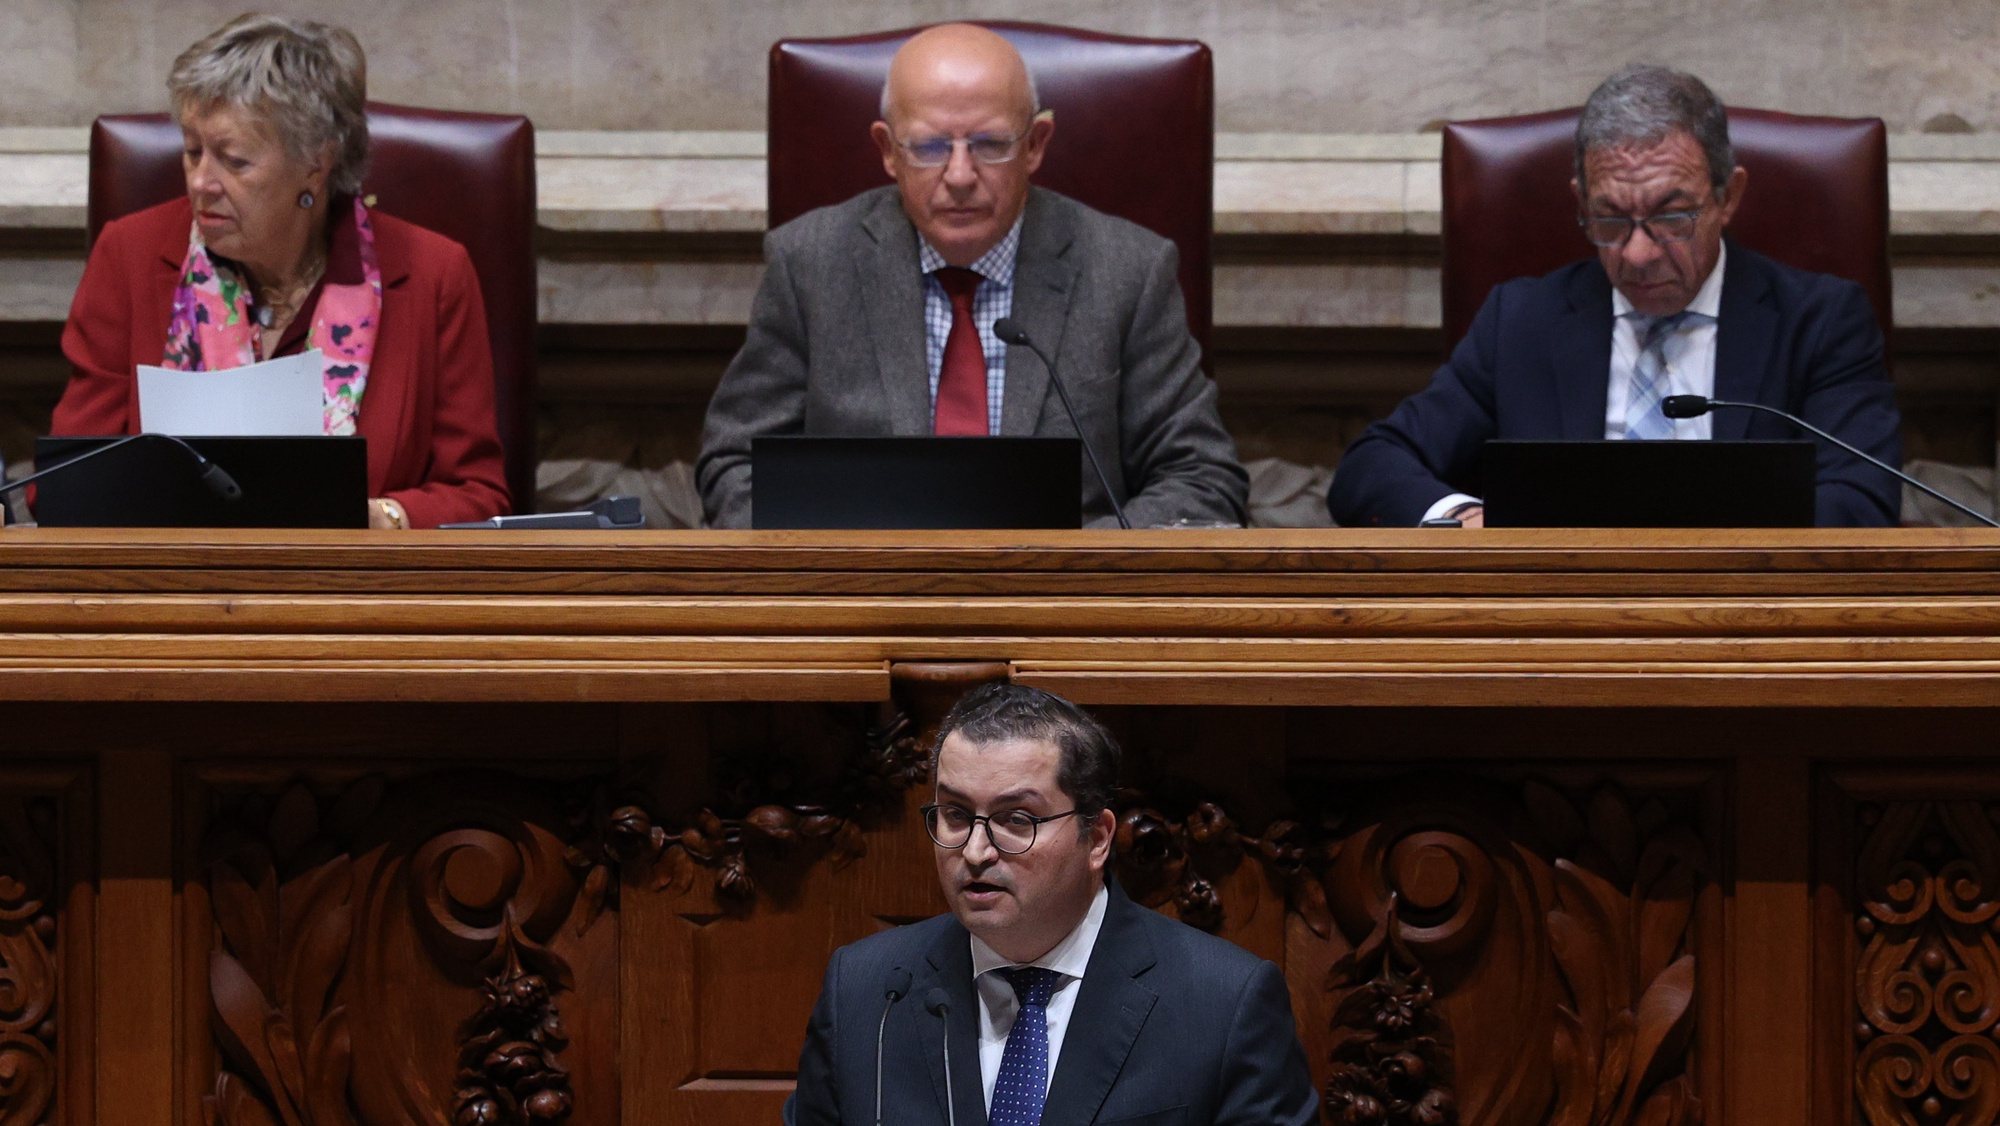 O lider parlamentar do PSD, Joaquim Miranda Sarmento, fala durante o encerramento da discussão na especialidade do Orçamento do Estado para 2023 na Assembleia da República em Lisboa, 25 de novembro de 2022. TIAGO PETINGA/LUSA